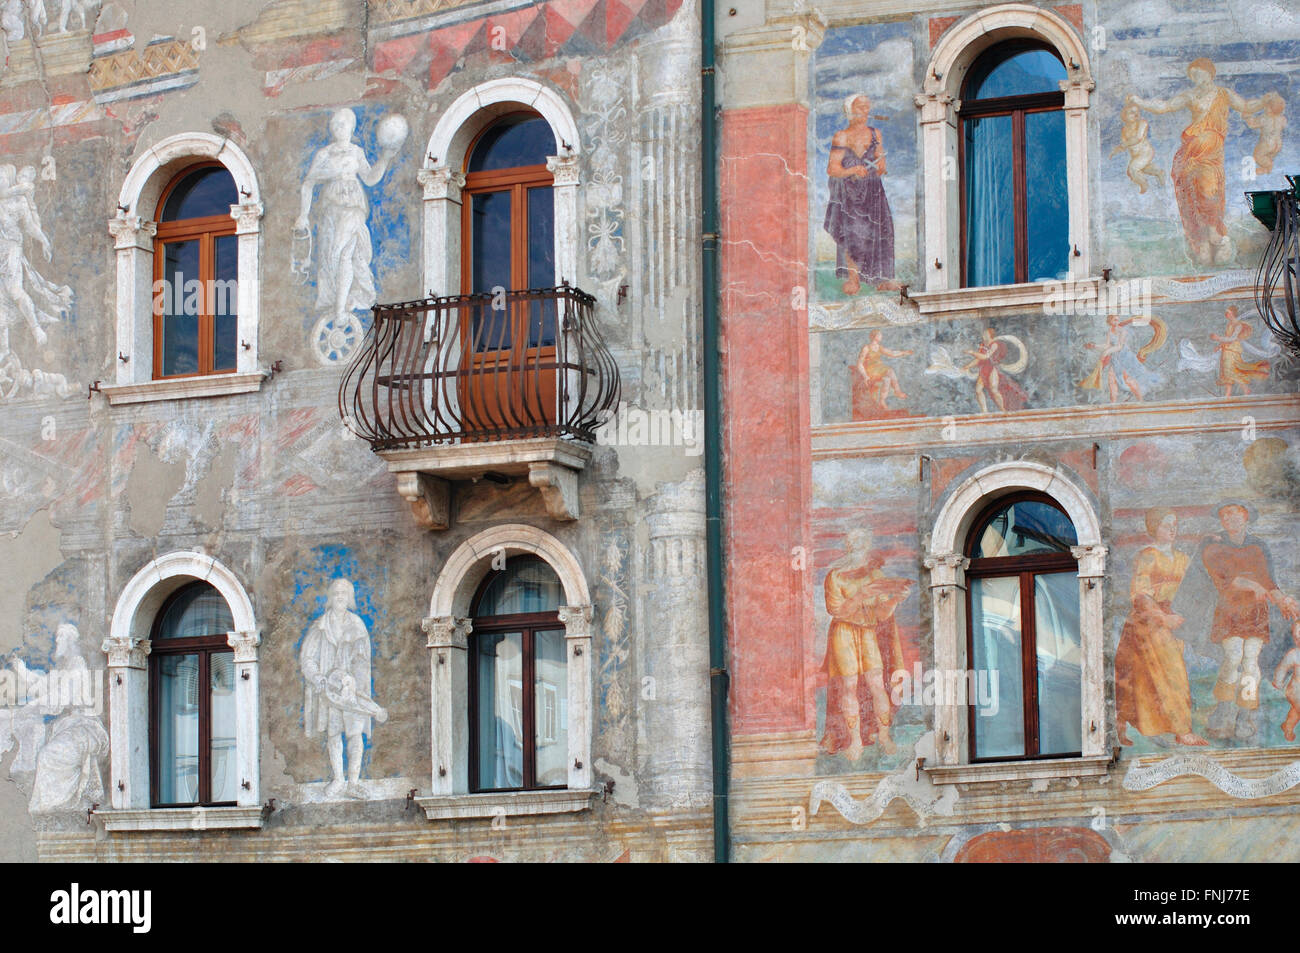 Italy, Trentino Alto Adige, Trento, Duomo square, Casa Cazuffi-Rella fresco by Marcello Fogolino Stock Photo